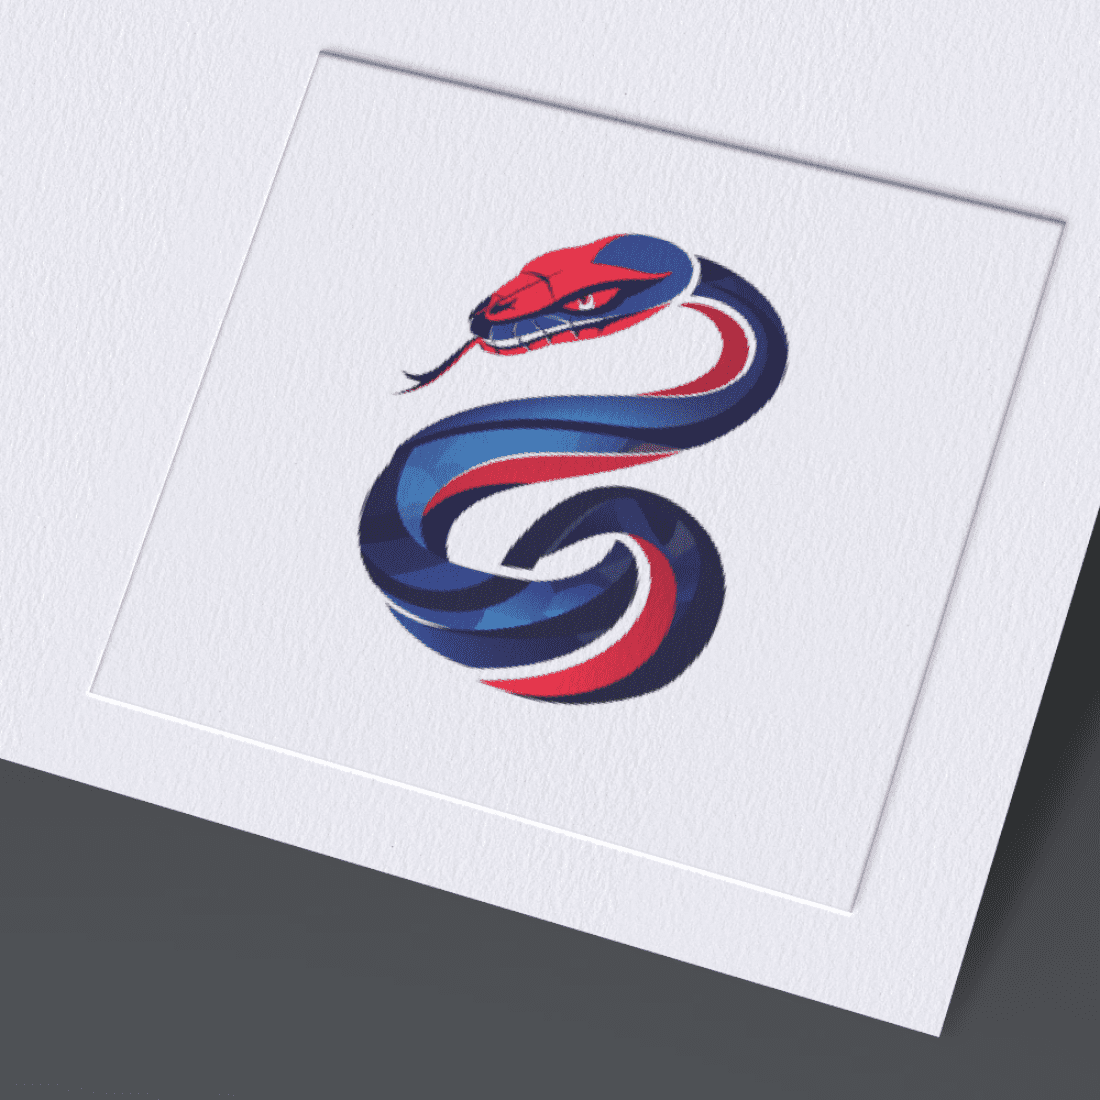 Snake Logo cover image.